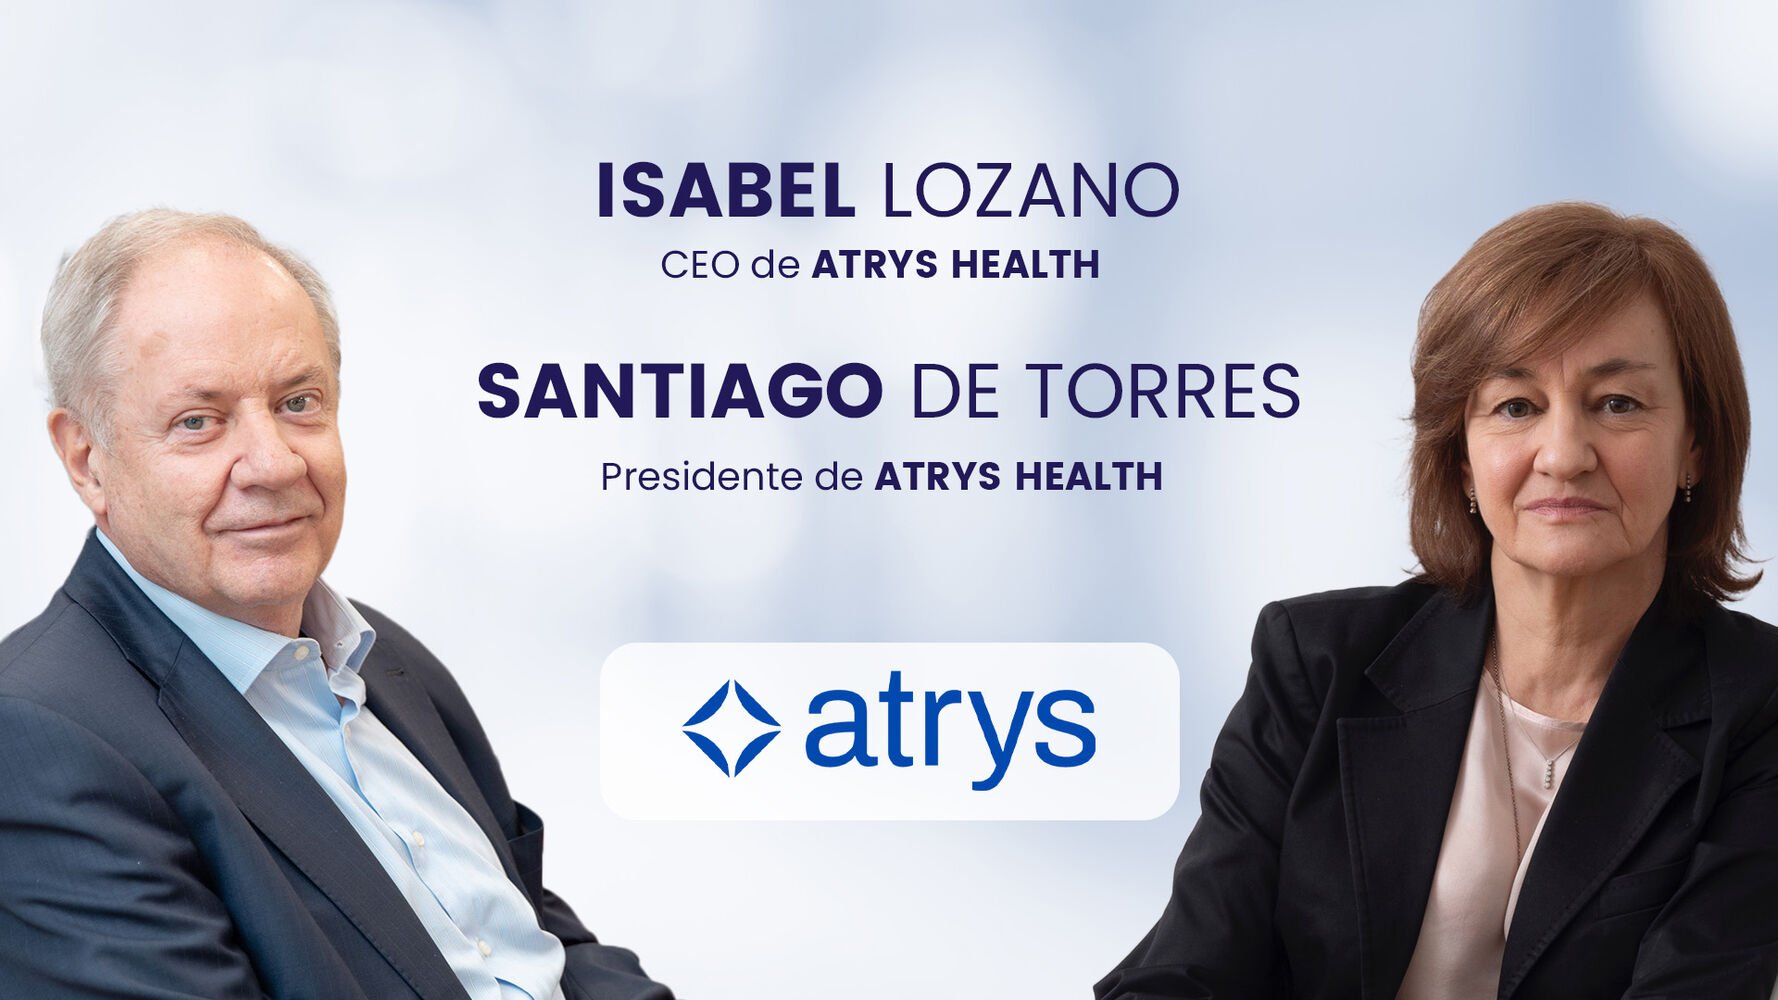 "Atrys desarrollará en 2025 una plataforma en la nube para colaborar entre médicos de diferentes países y cubrir las demandas sanitarias"